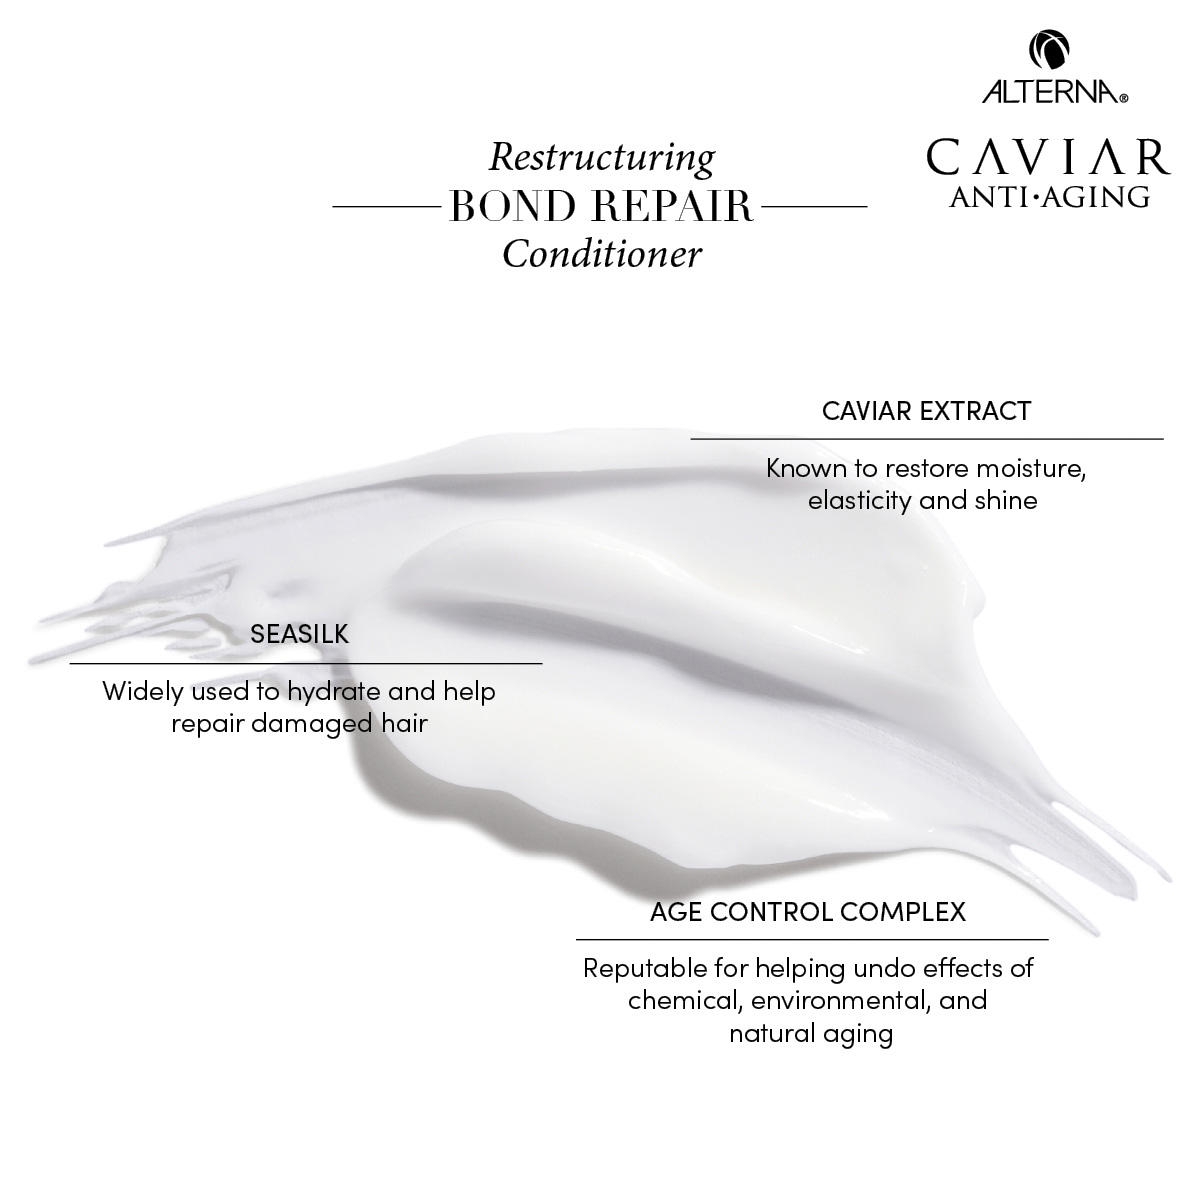 Alterna Caviar Anti-Aging Restructuring Bond Repair Conditioner 250 ml - 4